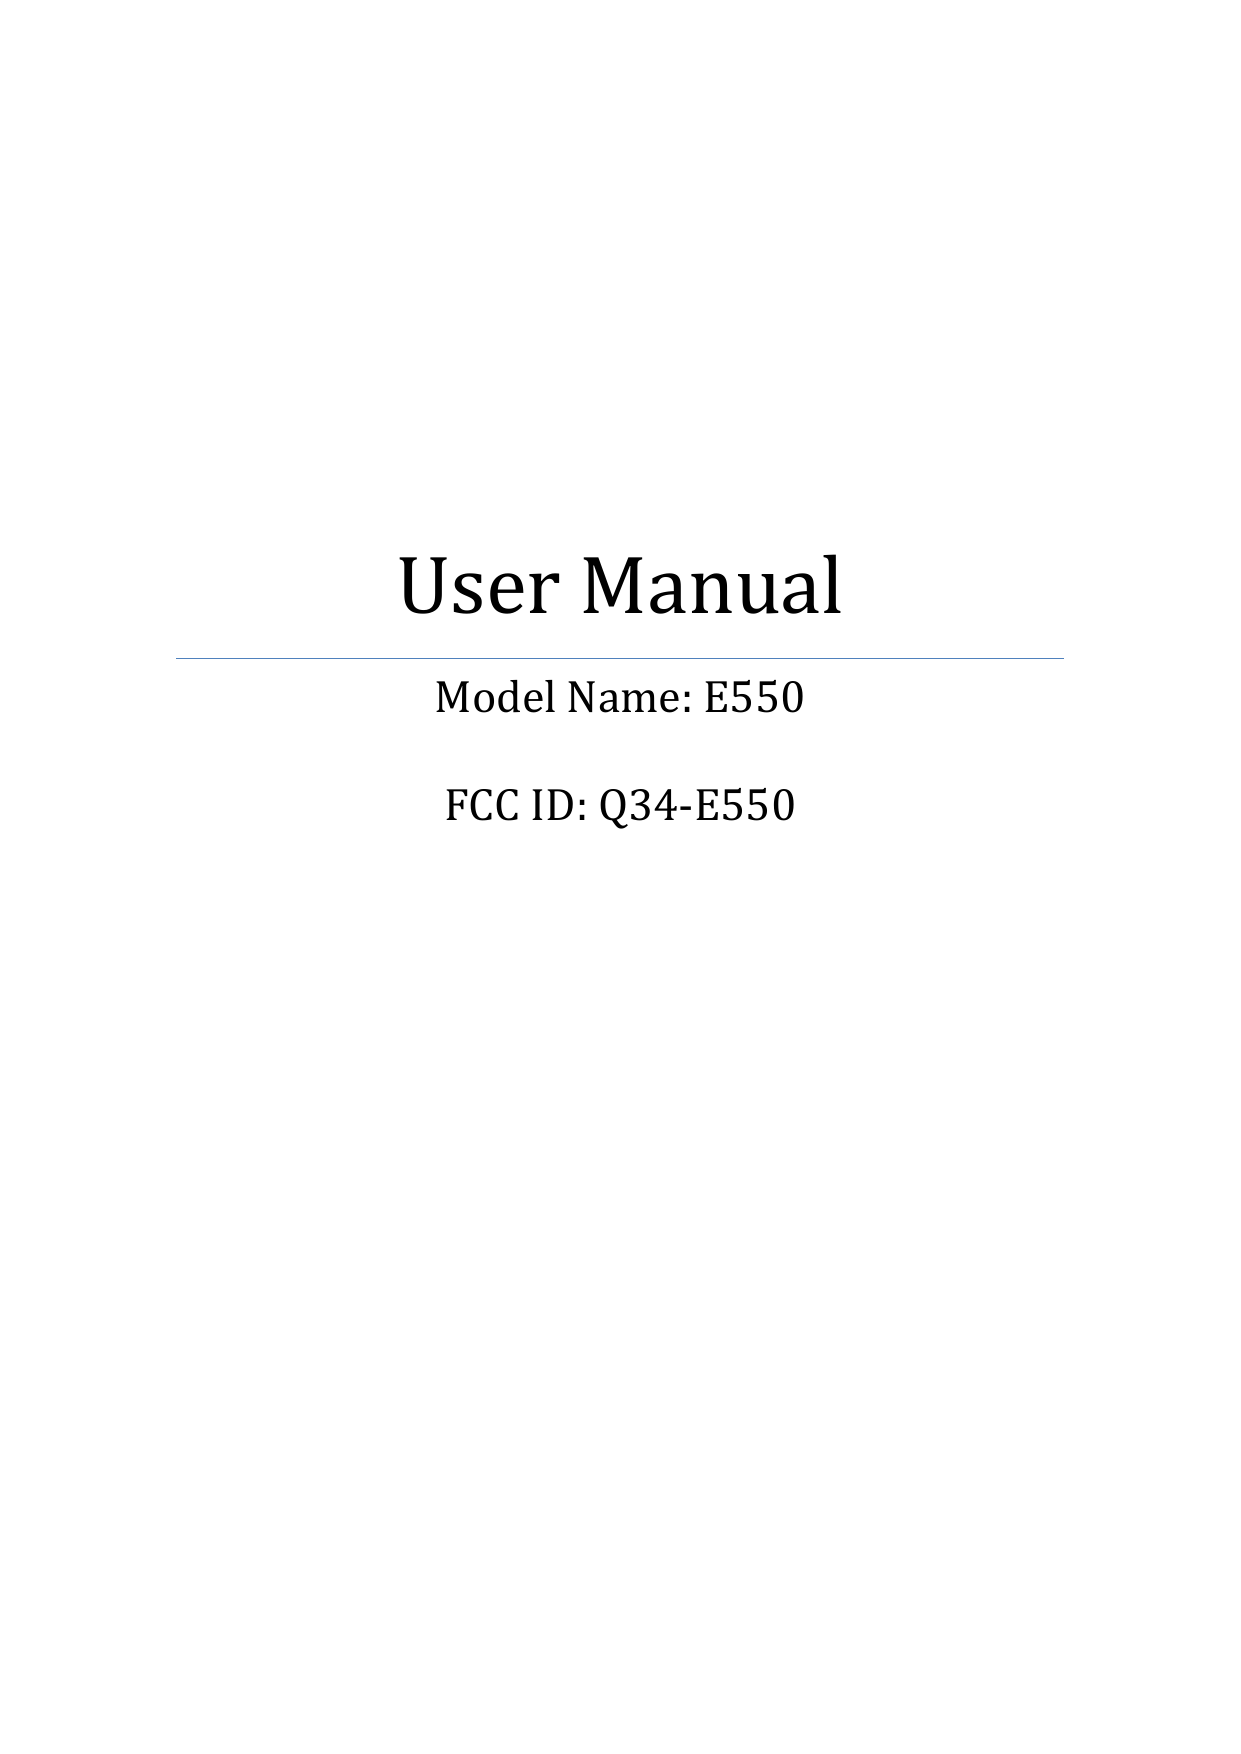            User Manual Model Name: E550  FCC ID: Q34-E550       